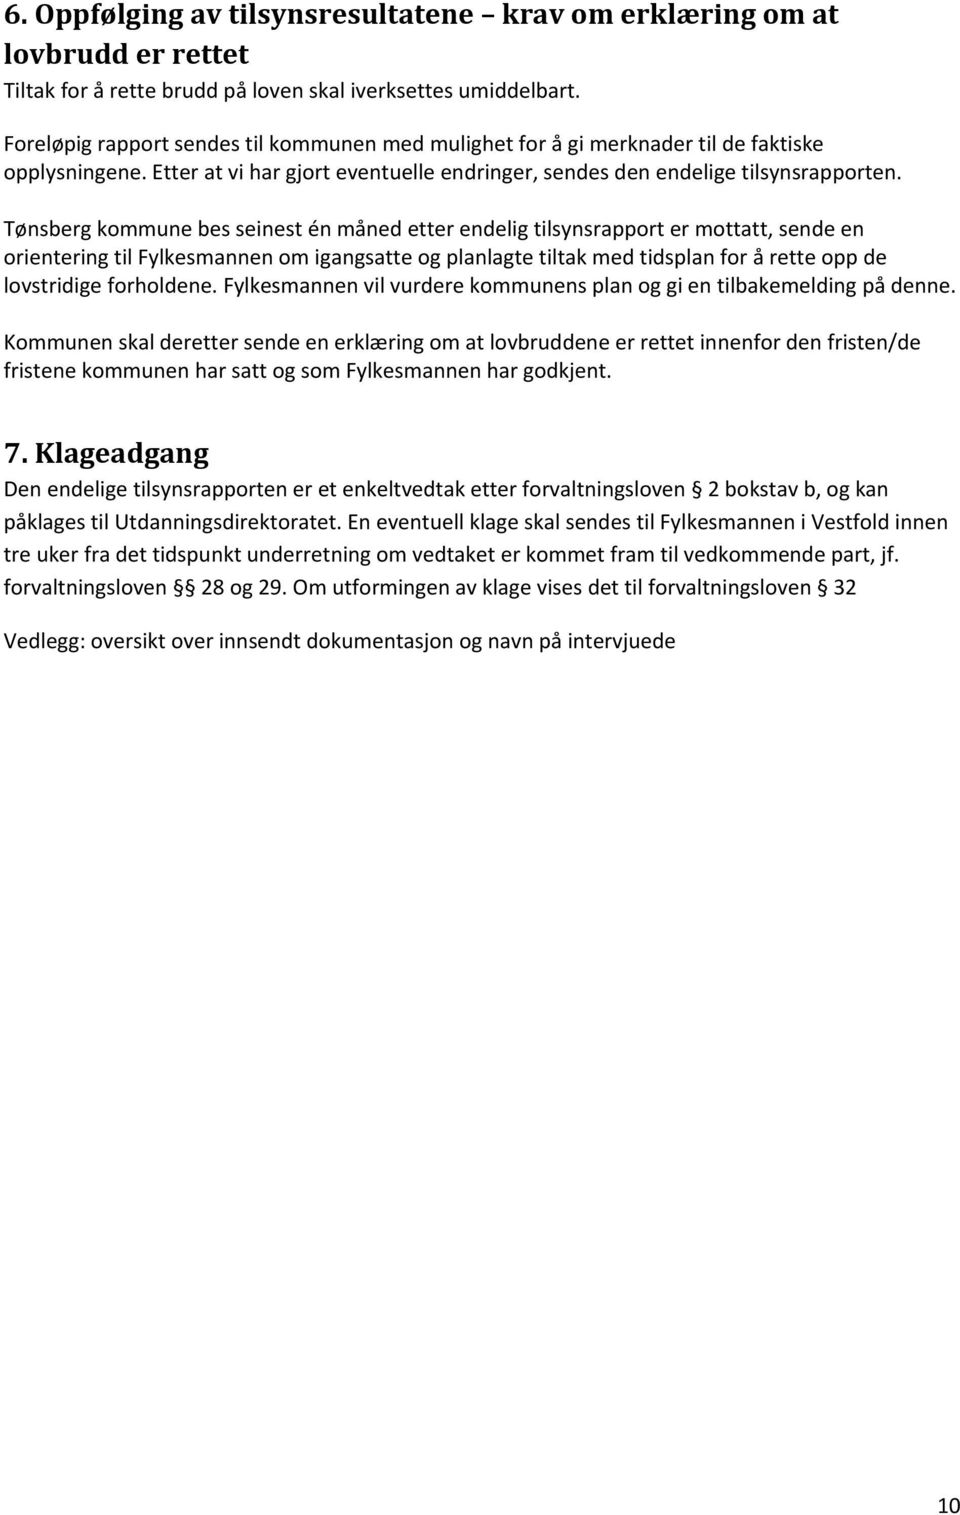 Tønsberg kommune bes seinest én måned etter endelig tilsynsrapport er mottatt, sende en orientering til Fylkesmannen om igangsatte og planlagte tiltak med tidsplan for å rette opp de lovstridige